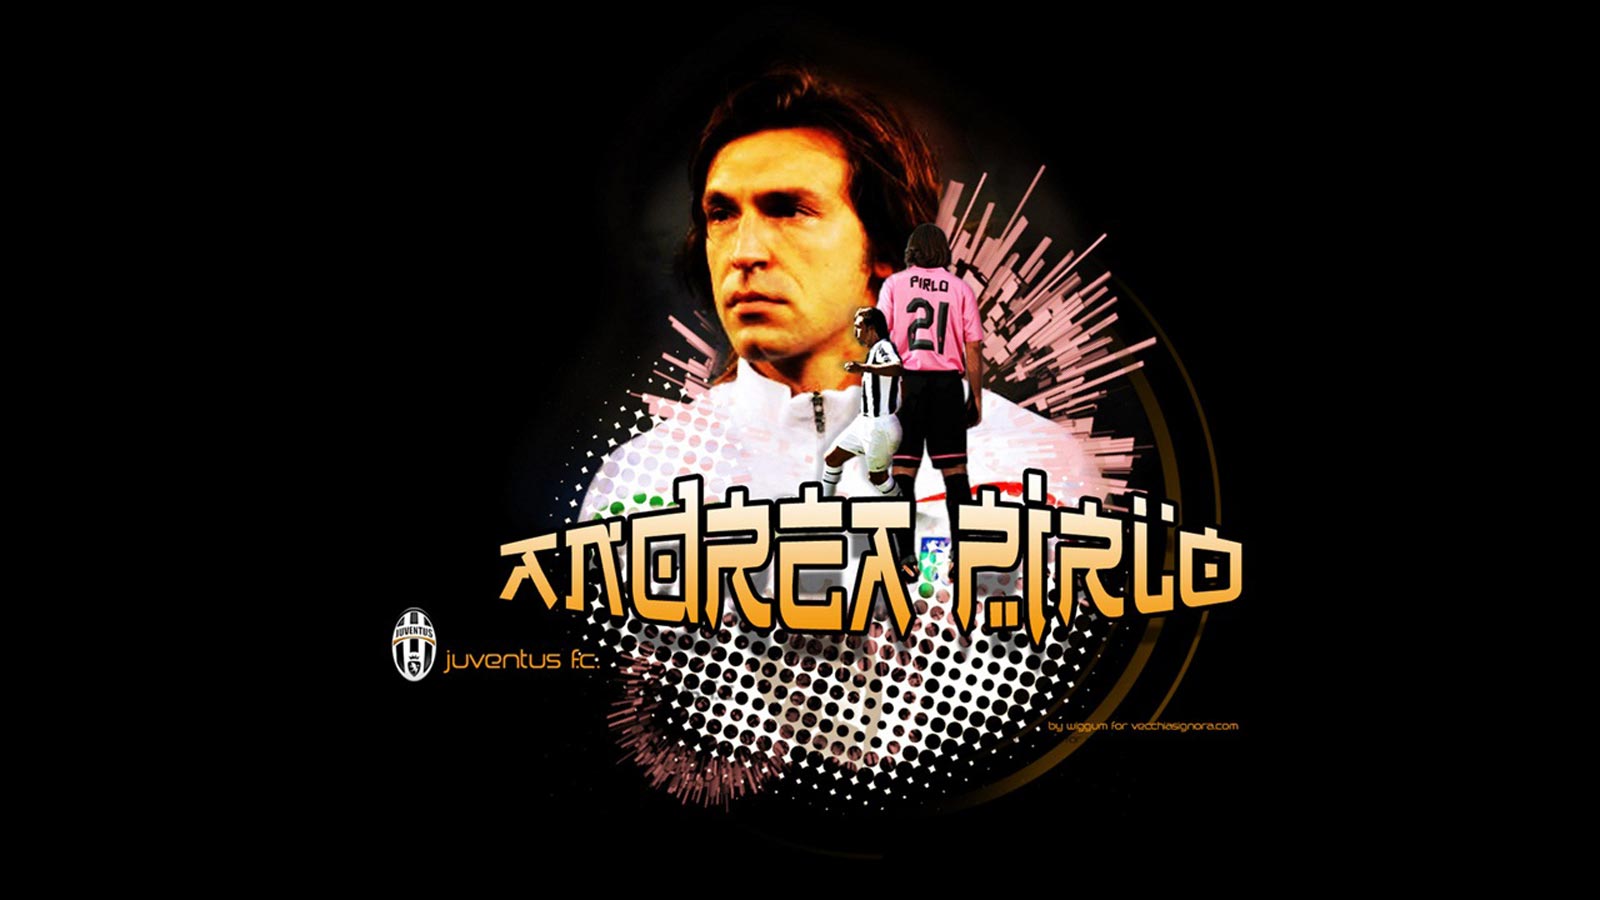 2012 06 30 - Pirlo Juventus , HD Wallpaper & Backgrounds